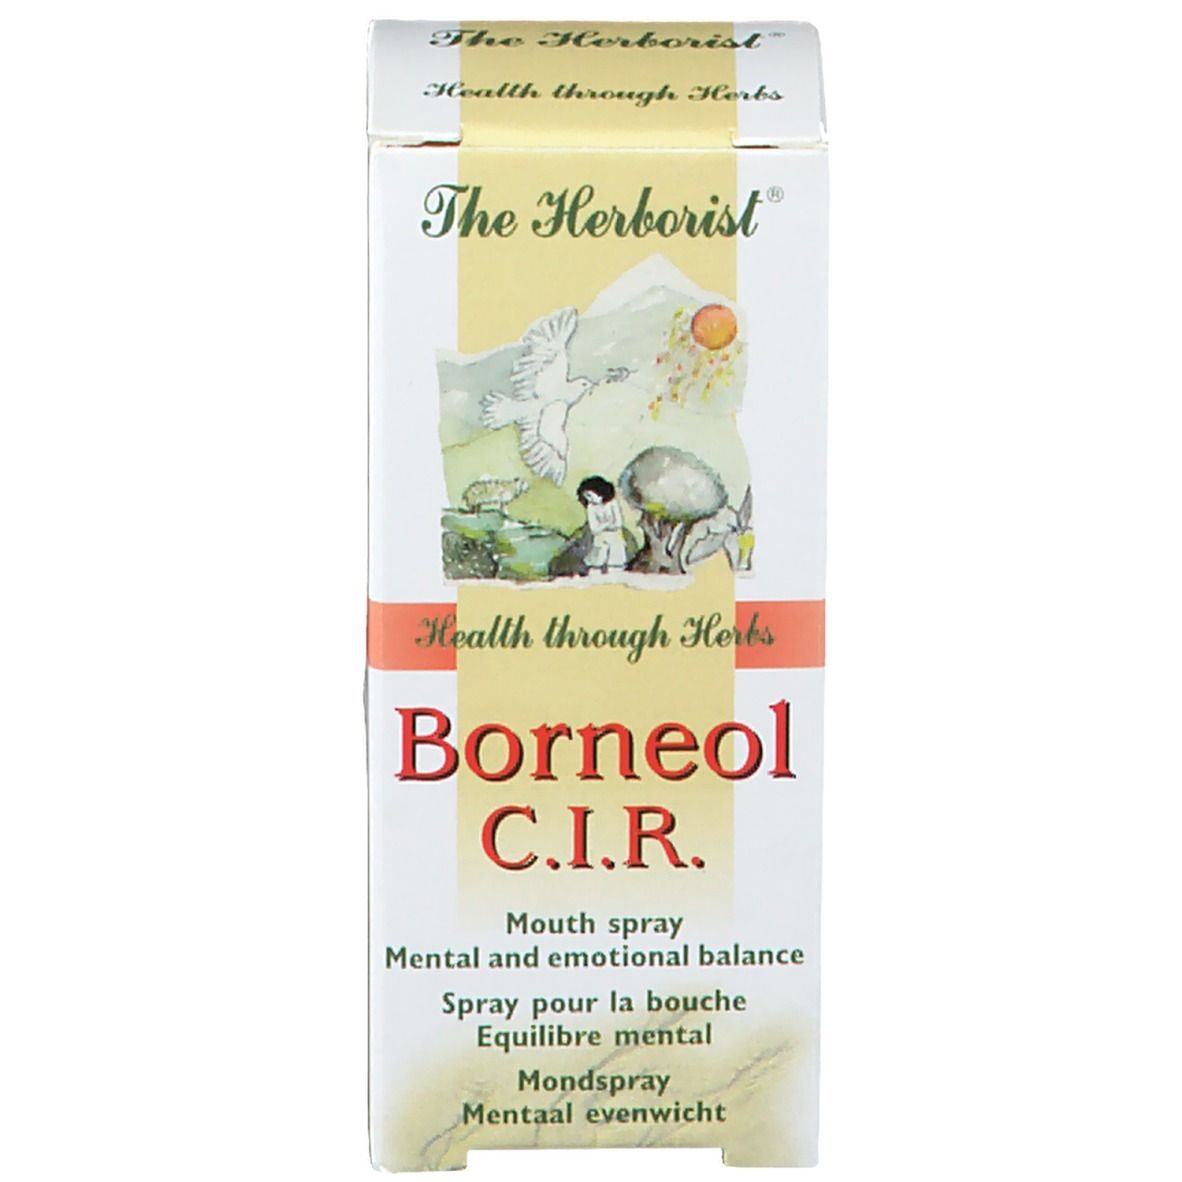 The Herborist® Borneol C.I.R